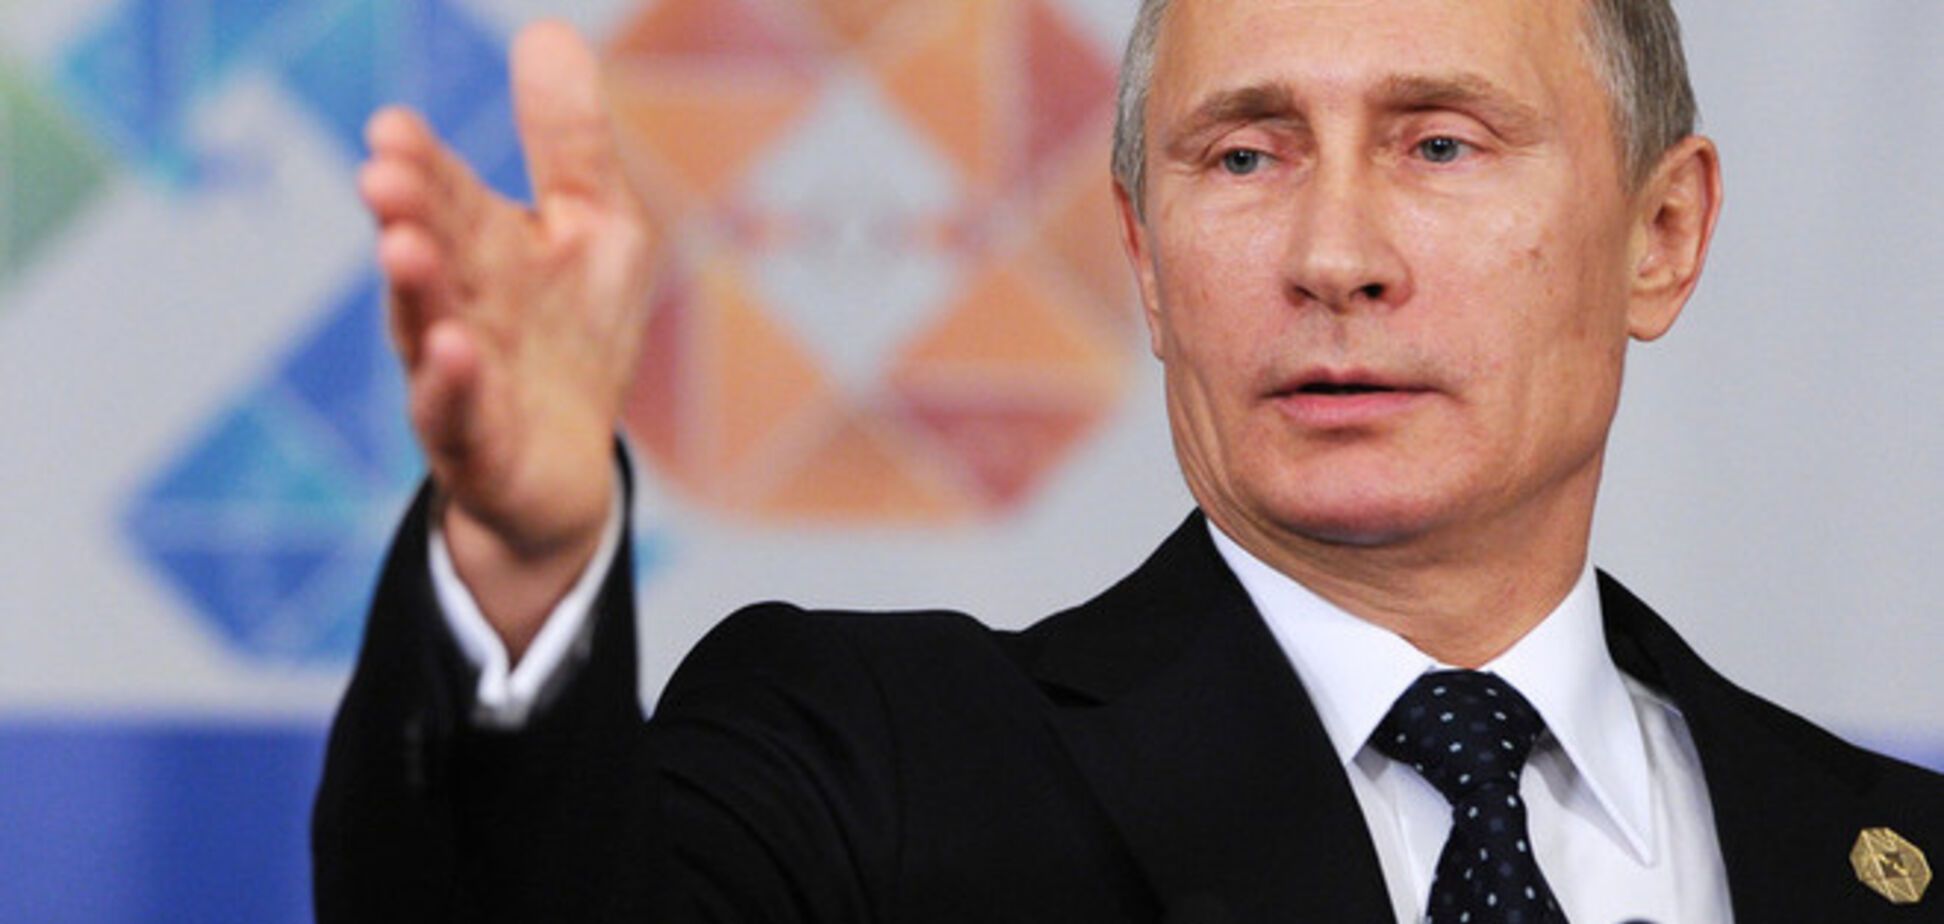 Путин свалил Россию в зависимость с признаками унижения - российский политолог